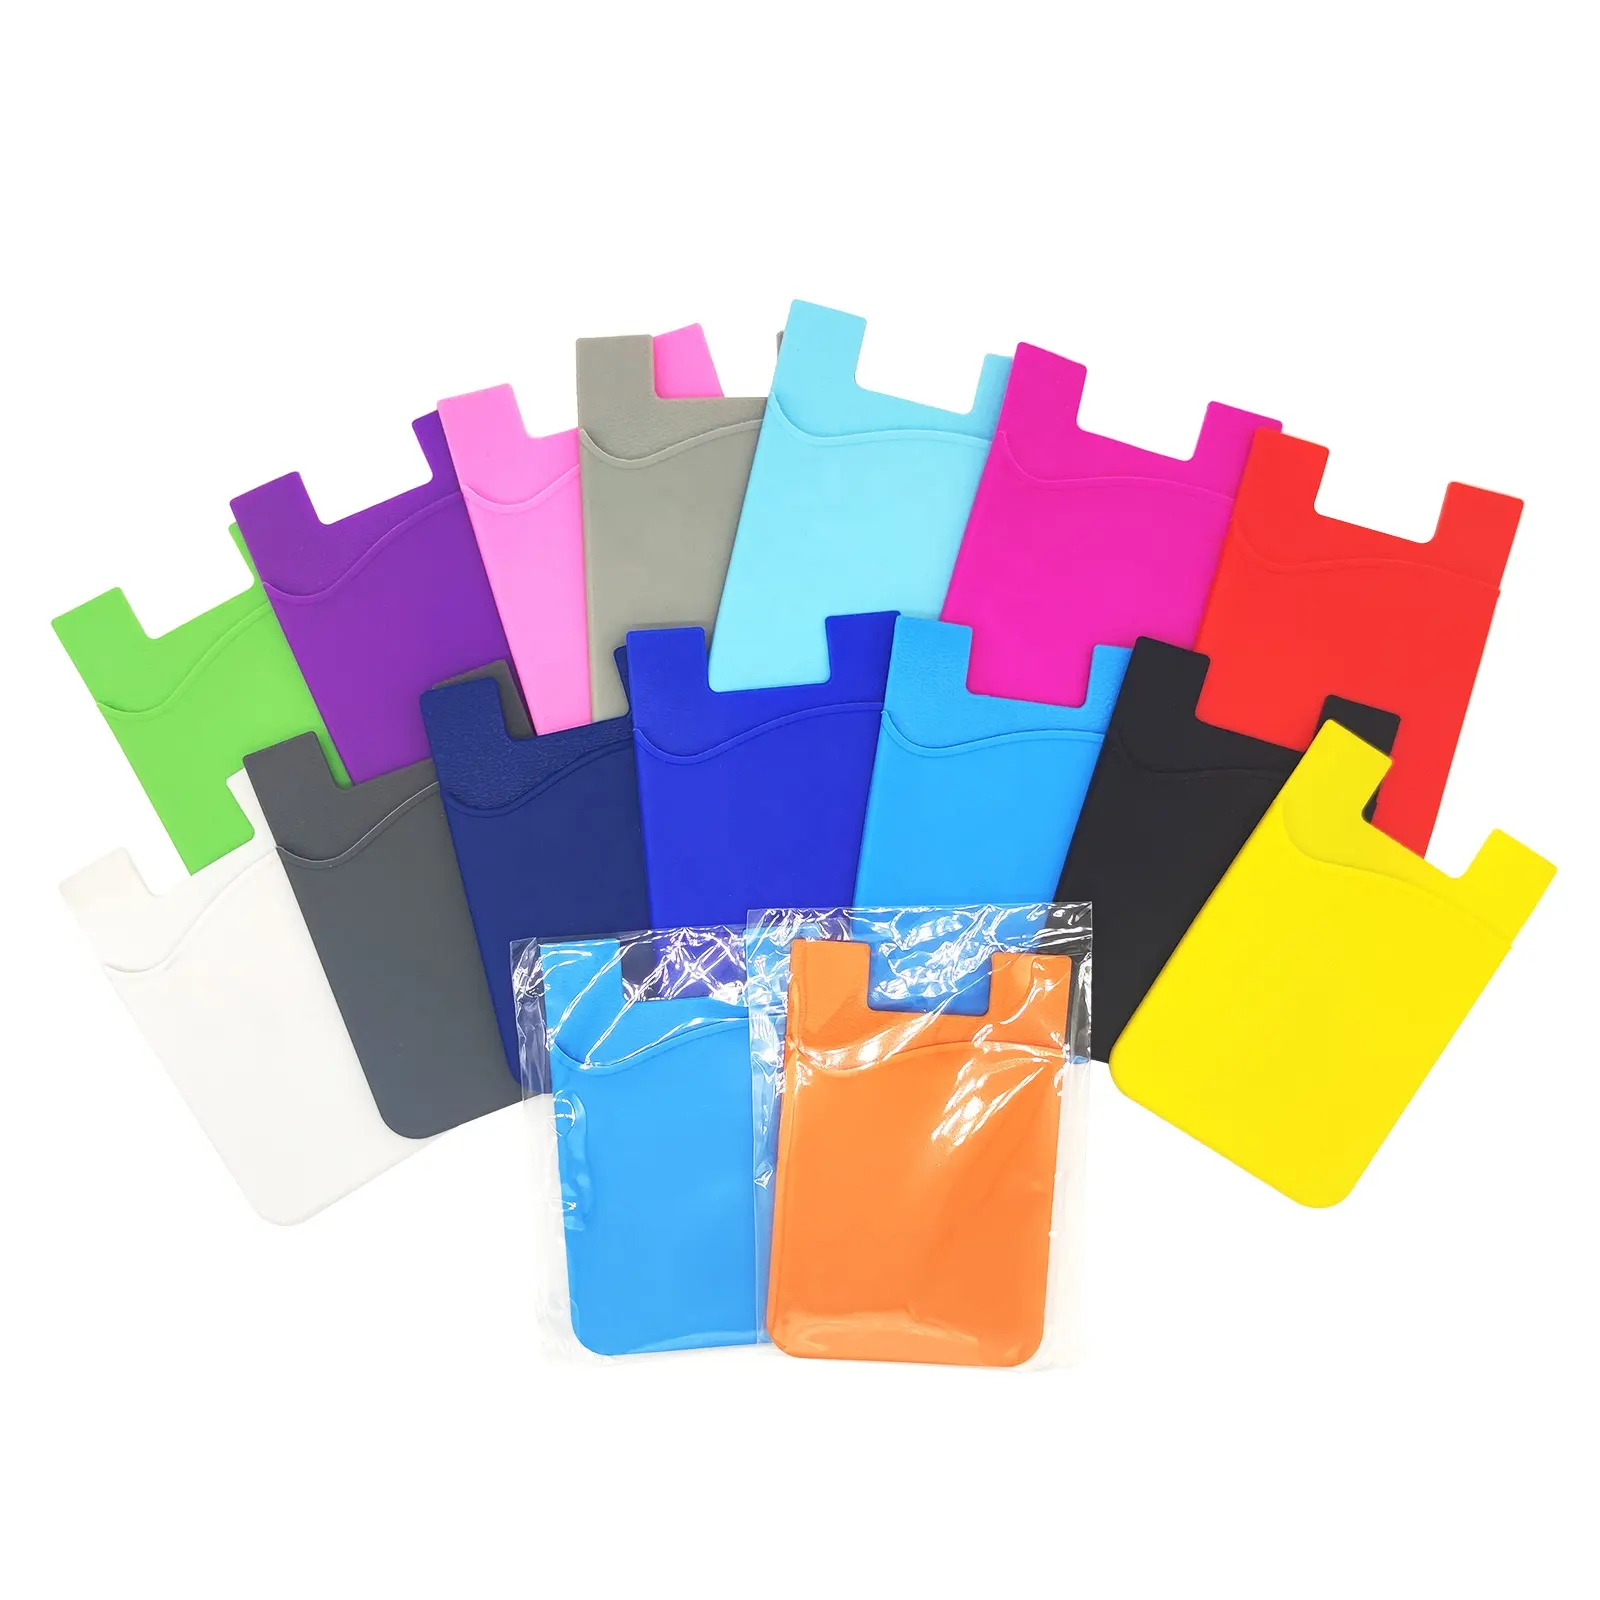 Porte-cartes de crédit en silicone avec logo personnalisé bon marché d'usine porte-cartes d'identité mobiles porte-cartes de téléphone portable cadeaux promotionnels